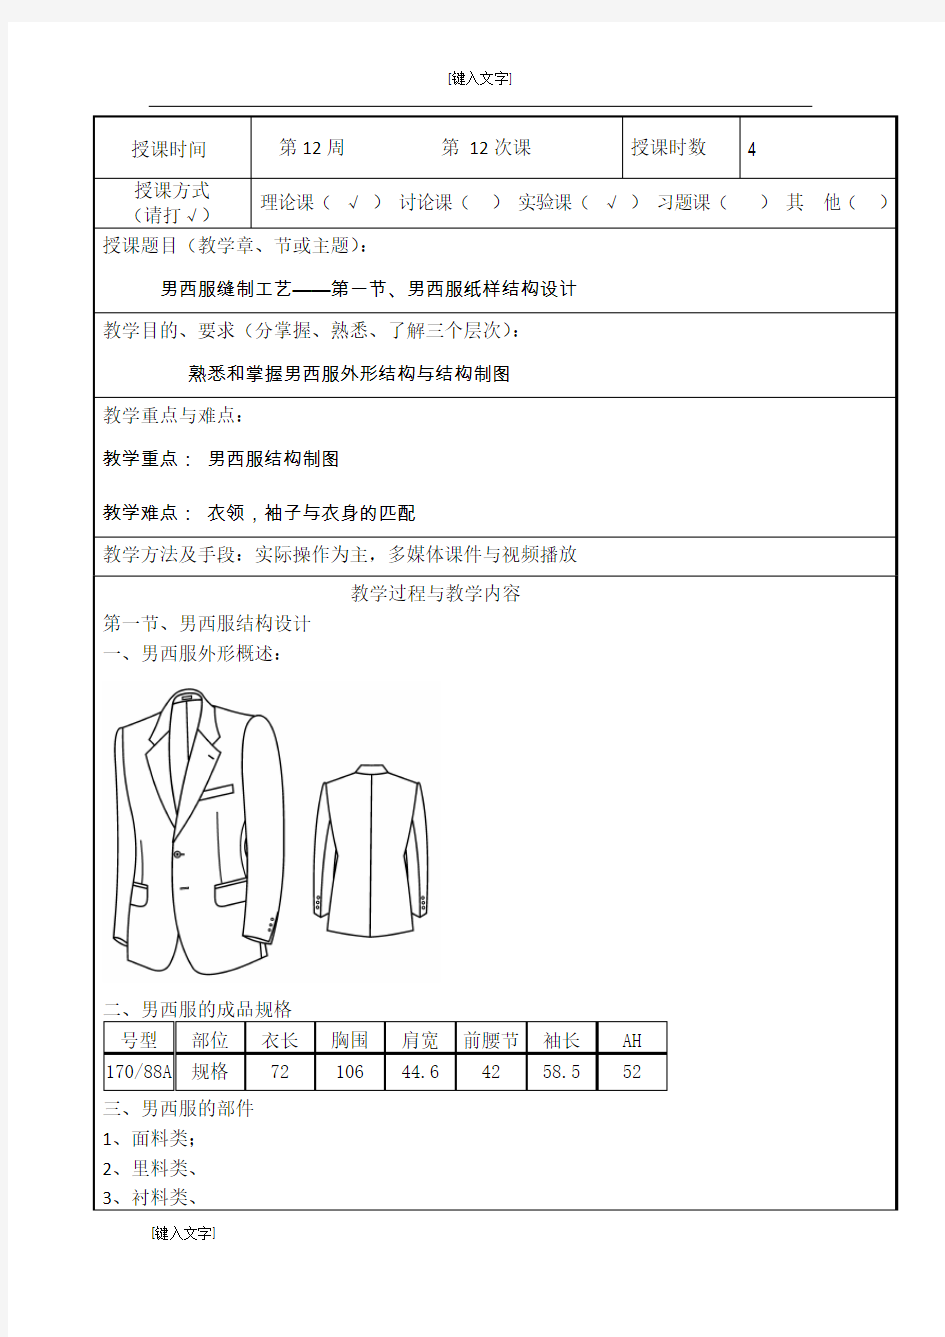 (工艺技术)2020年男西服缝制工艺